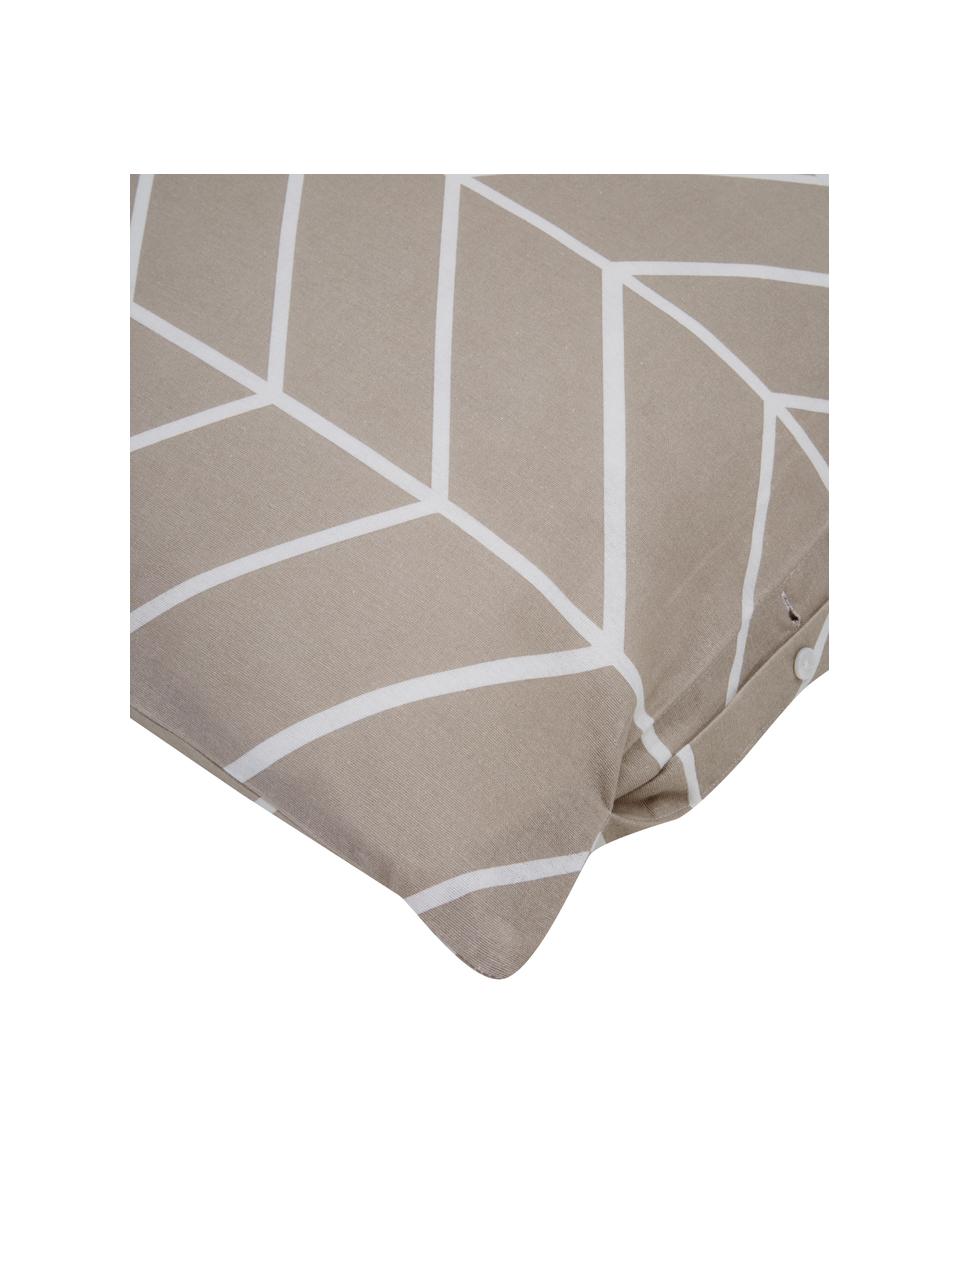 Flanell-Bettwäsche Yule mit grafischem Muster, Webart: Flanell Flanell ist ein k, Nougat, Weiß, 135 x 200 cm + 1 Kissen 80 x 80 cm